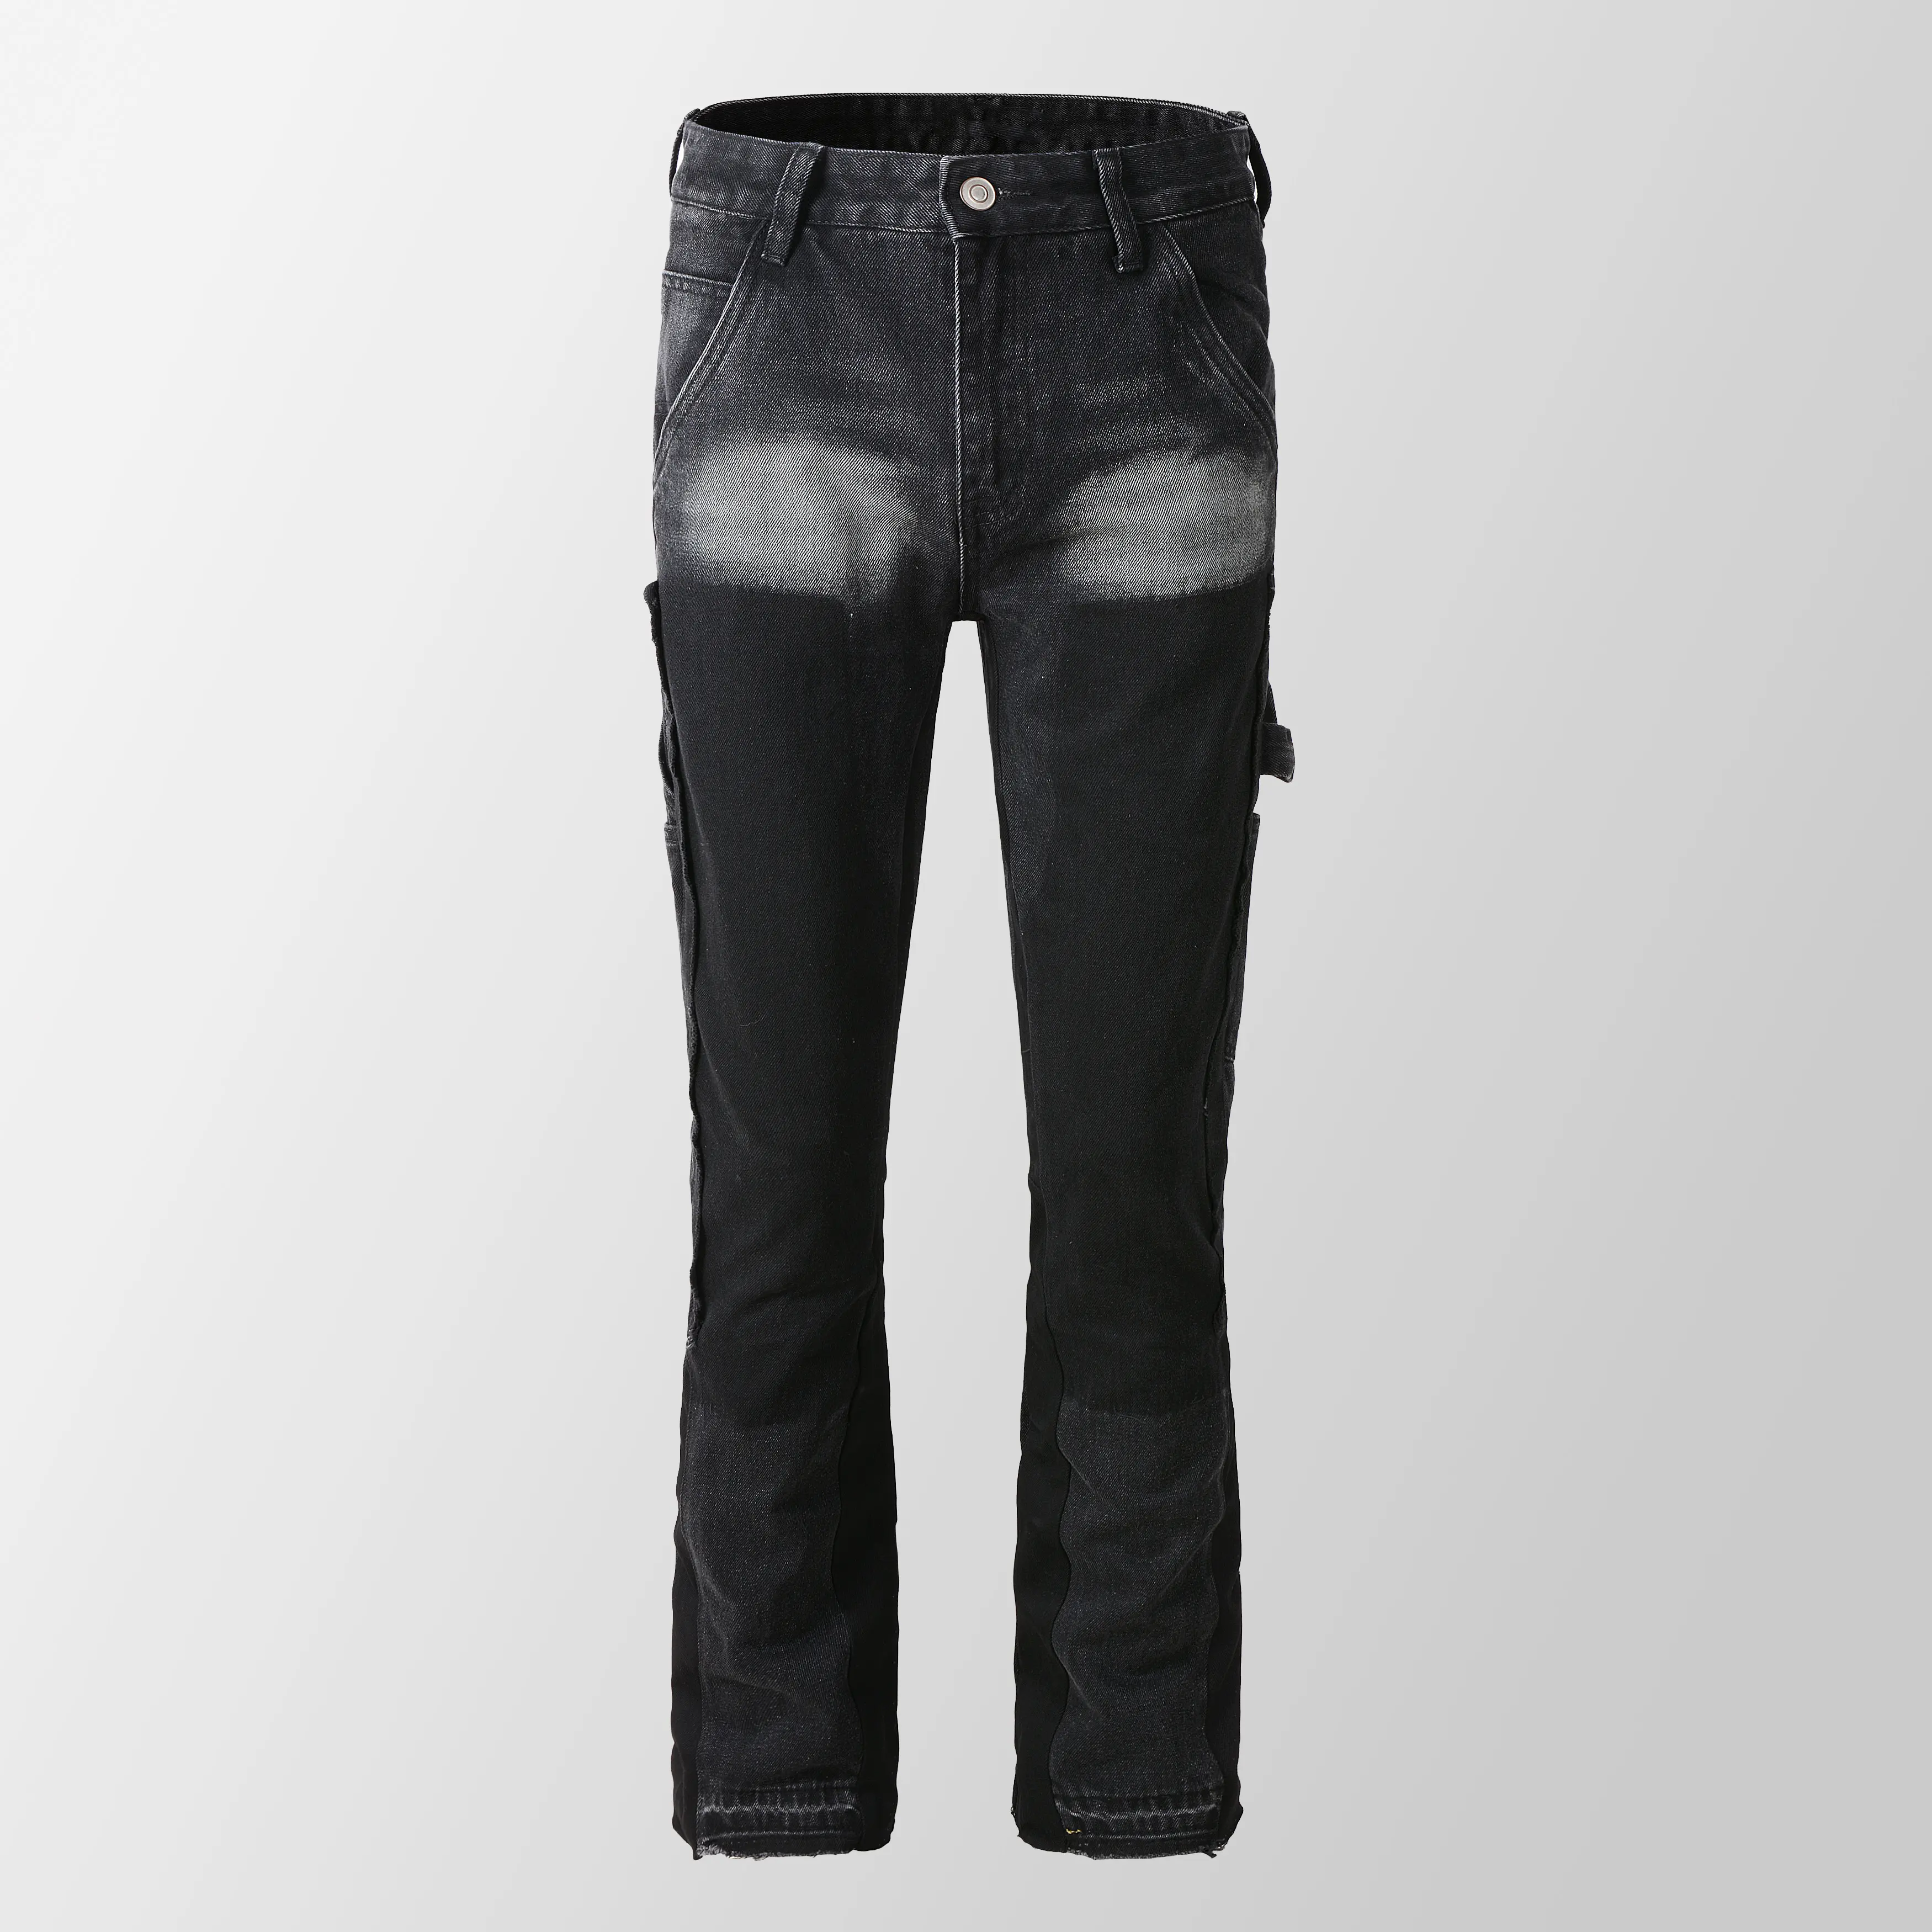 9303 nuova moda personalizzare i jeans impilati da uomo rilassata svasati jeans pantaloni impilati per gli uomini